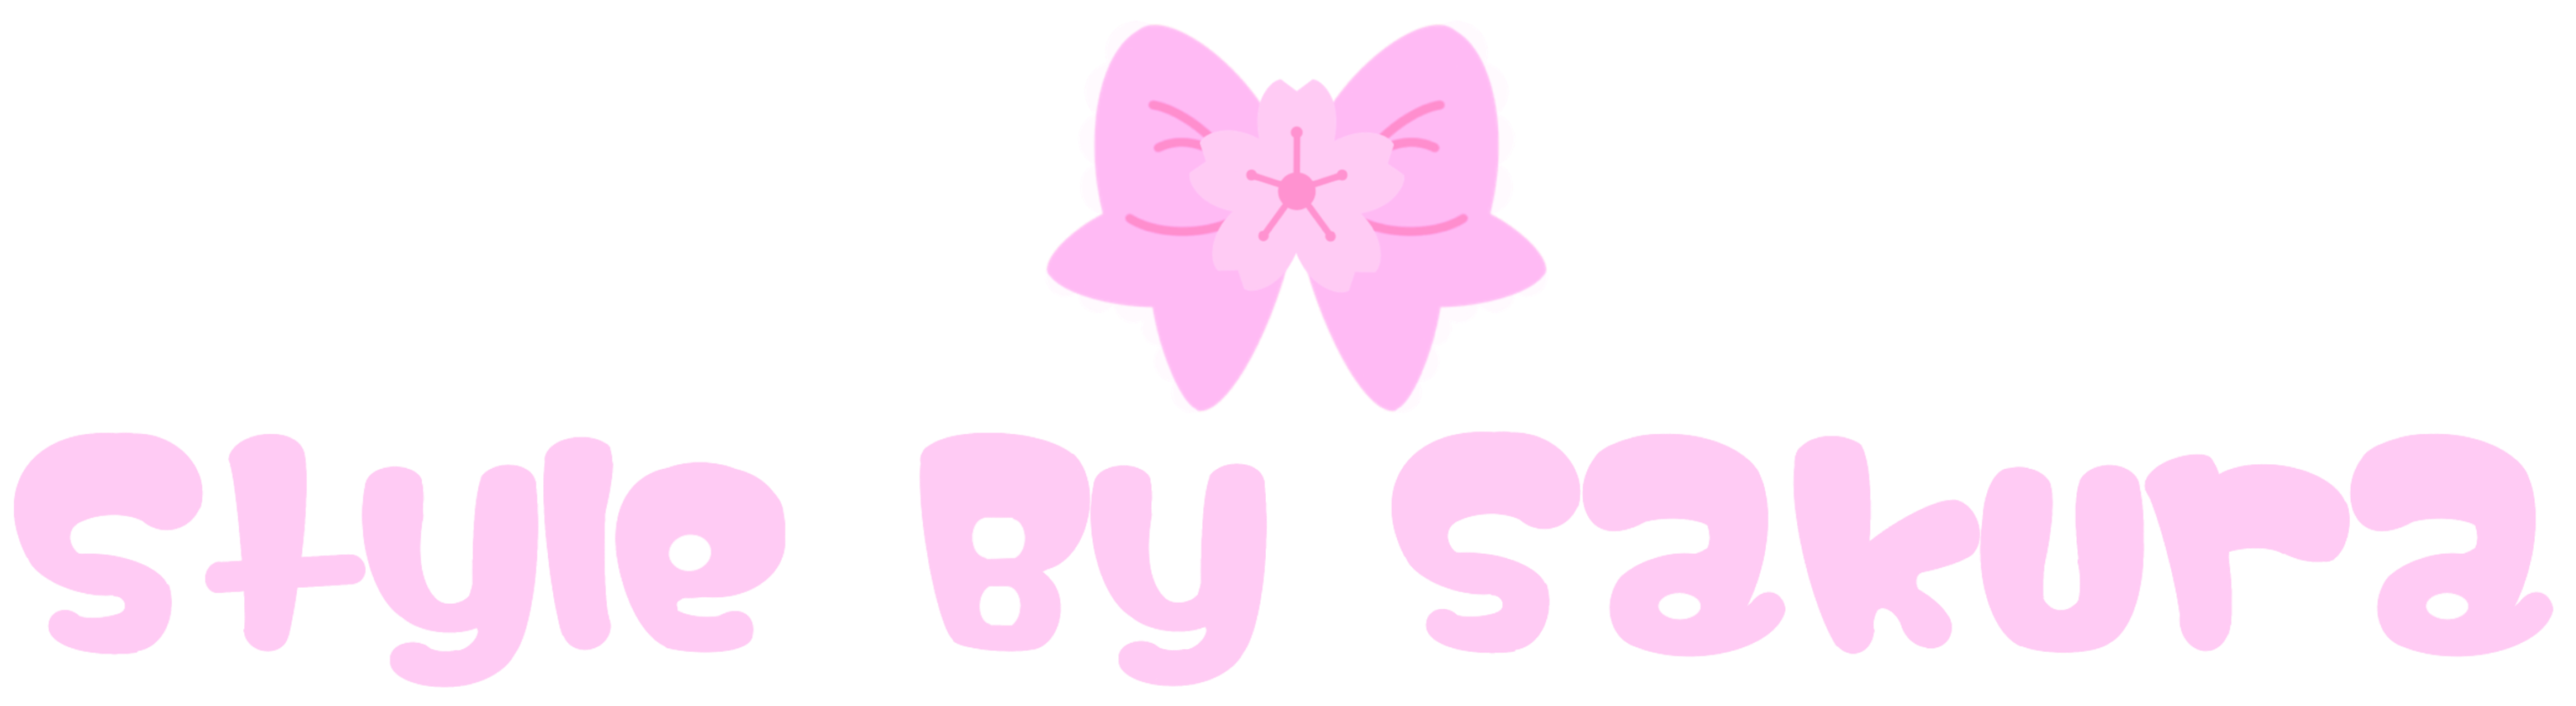 StyleBySakura